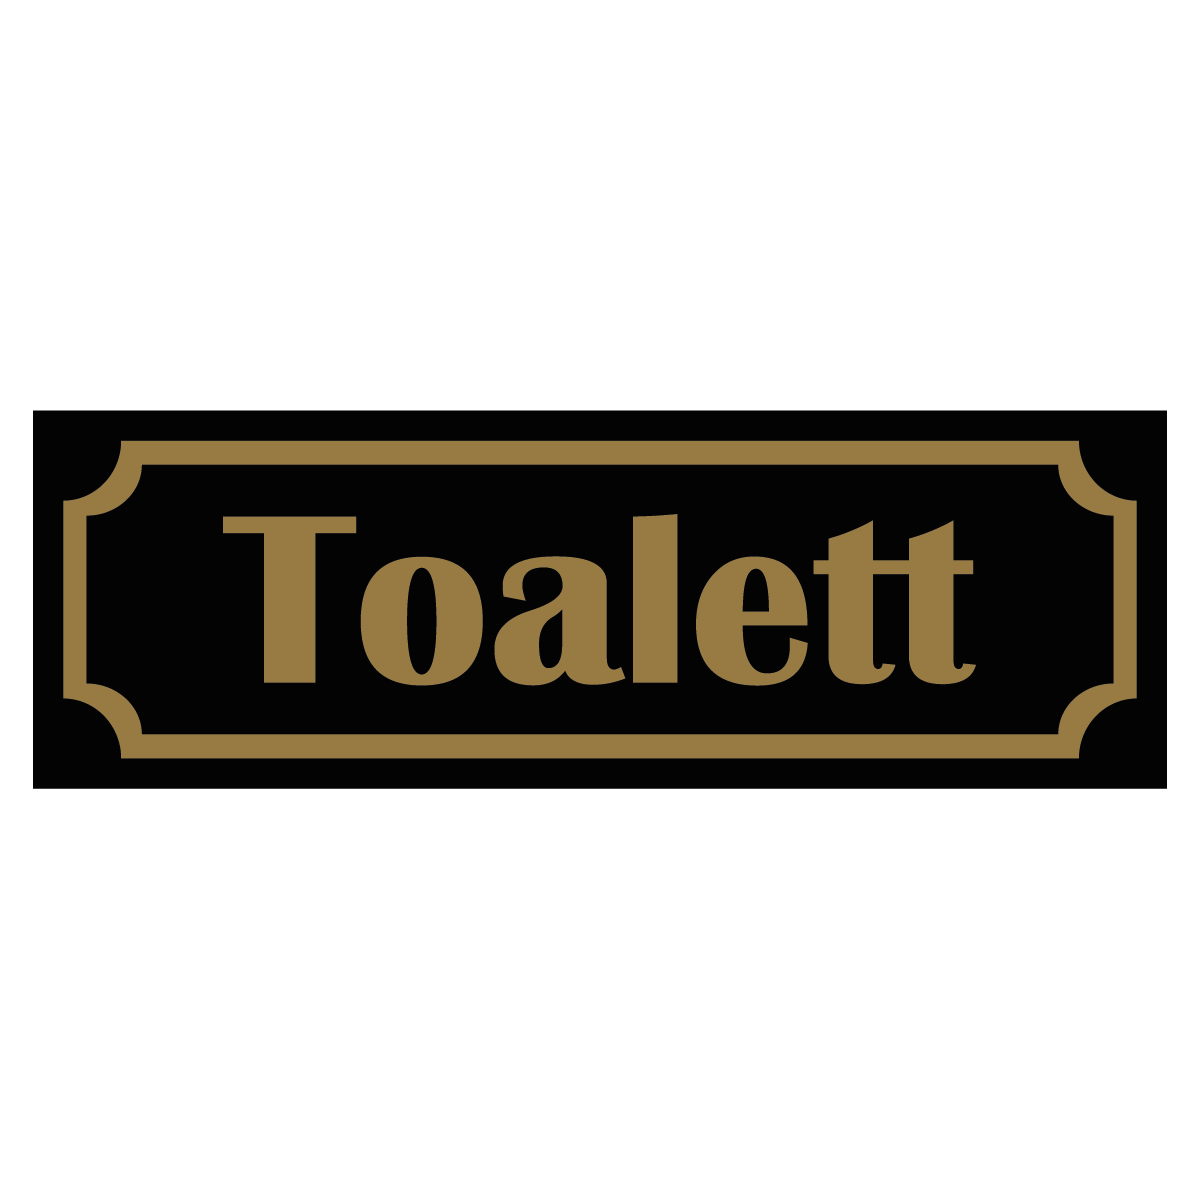 Toalett - Skylt - 150x50mm - Svart - Guld